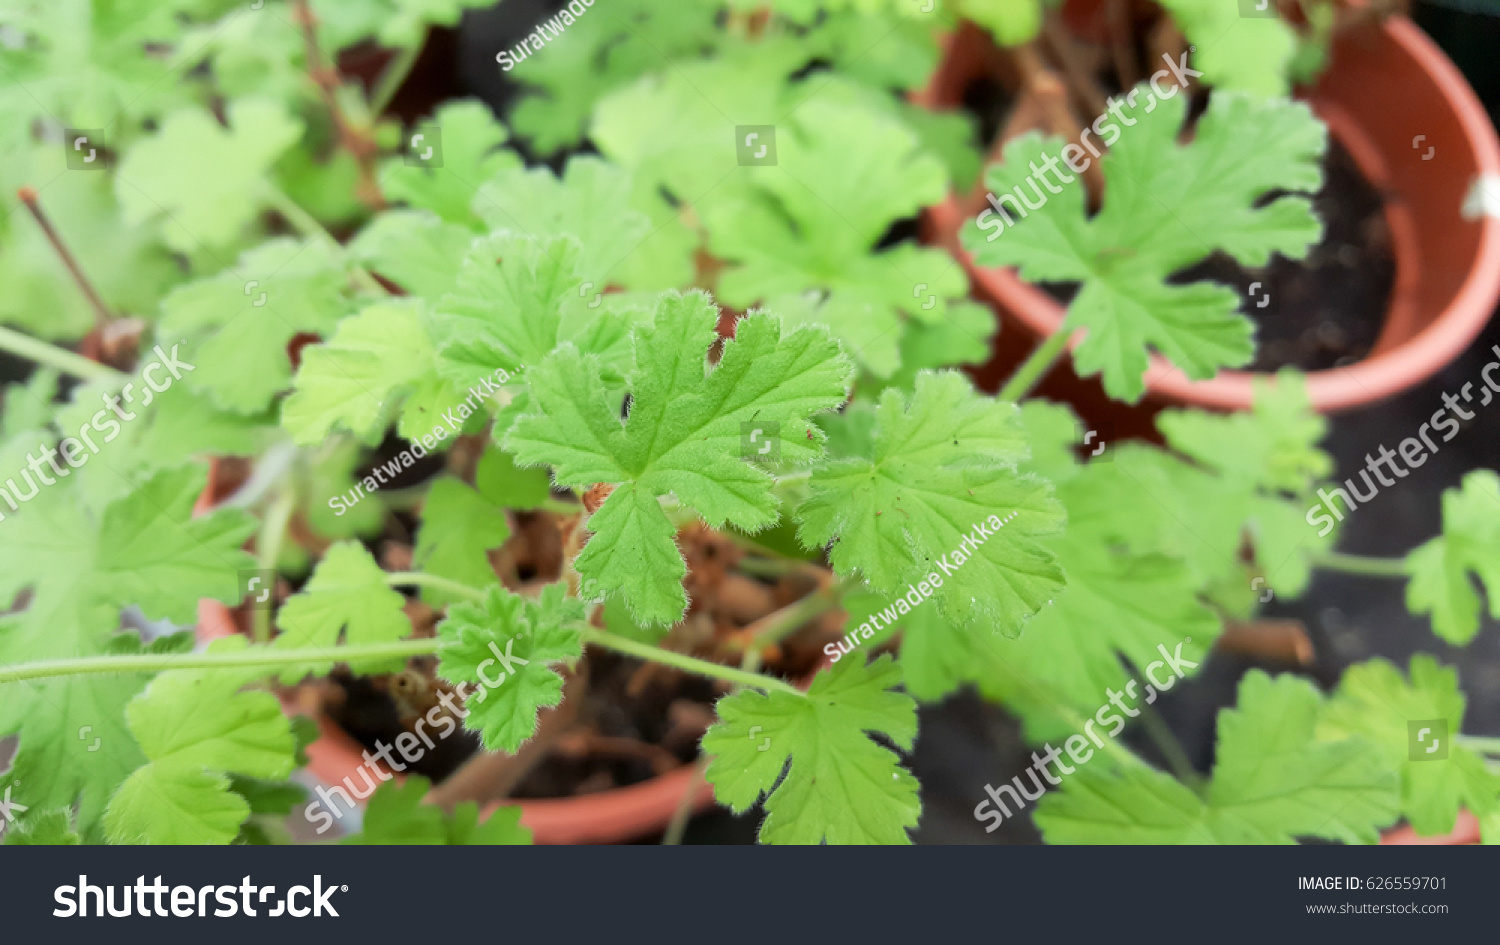 Citronella plant, Mosquito plant geranium, Citrosa geranium or Pelargonium citrosum. Leave contains citronella, which is a common ingredient in insect or mosquito repellent. #626559701